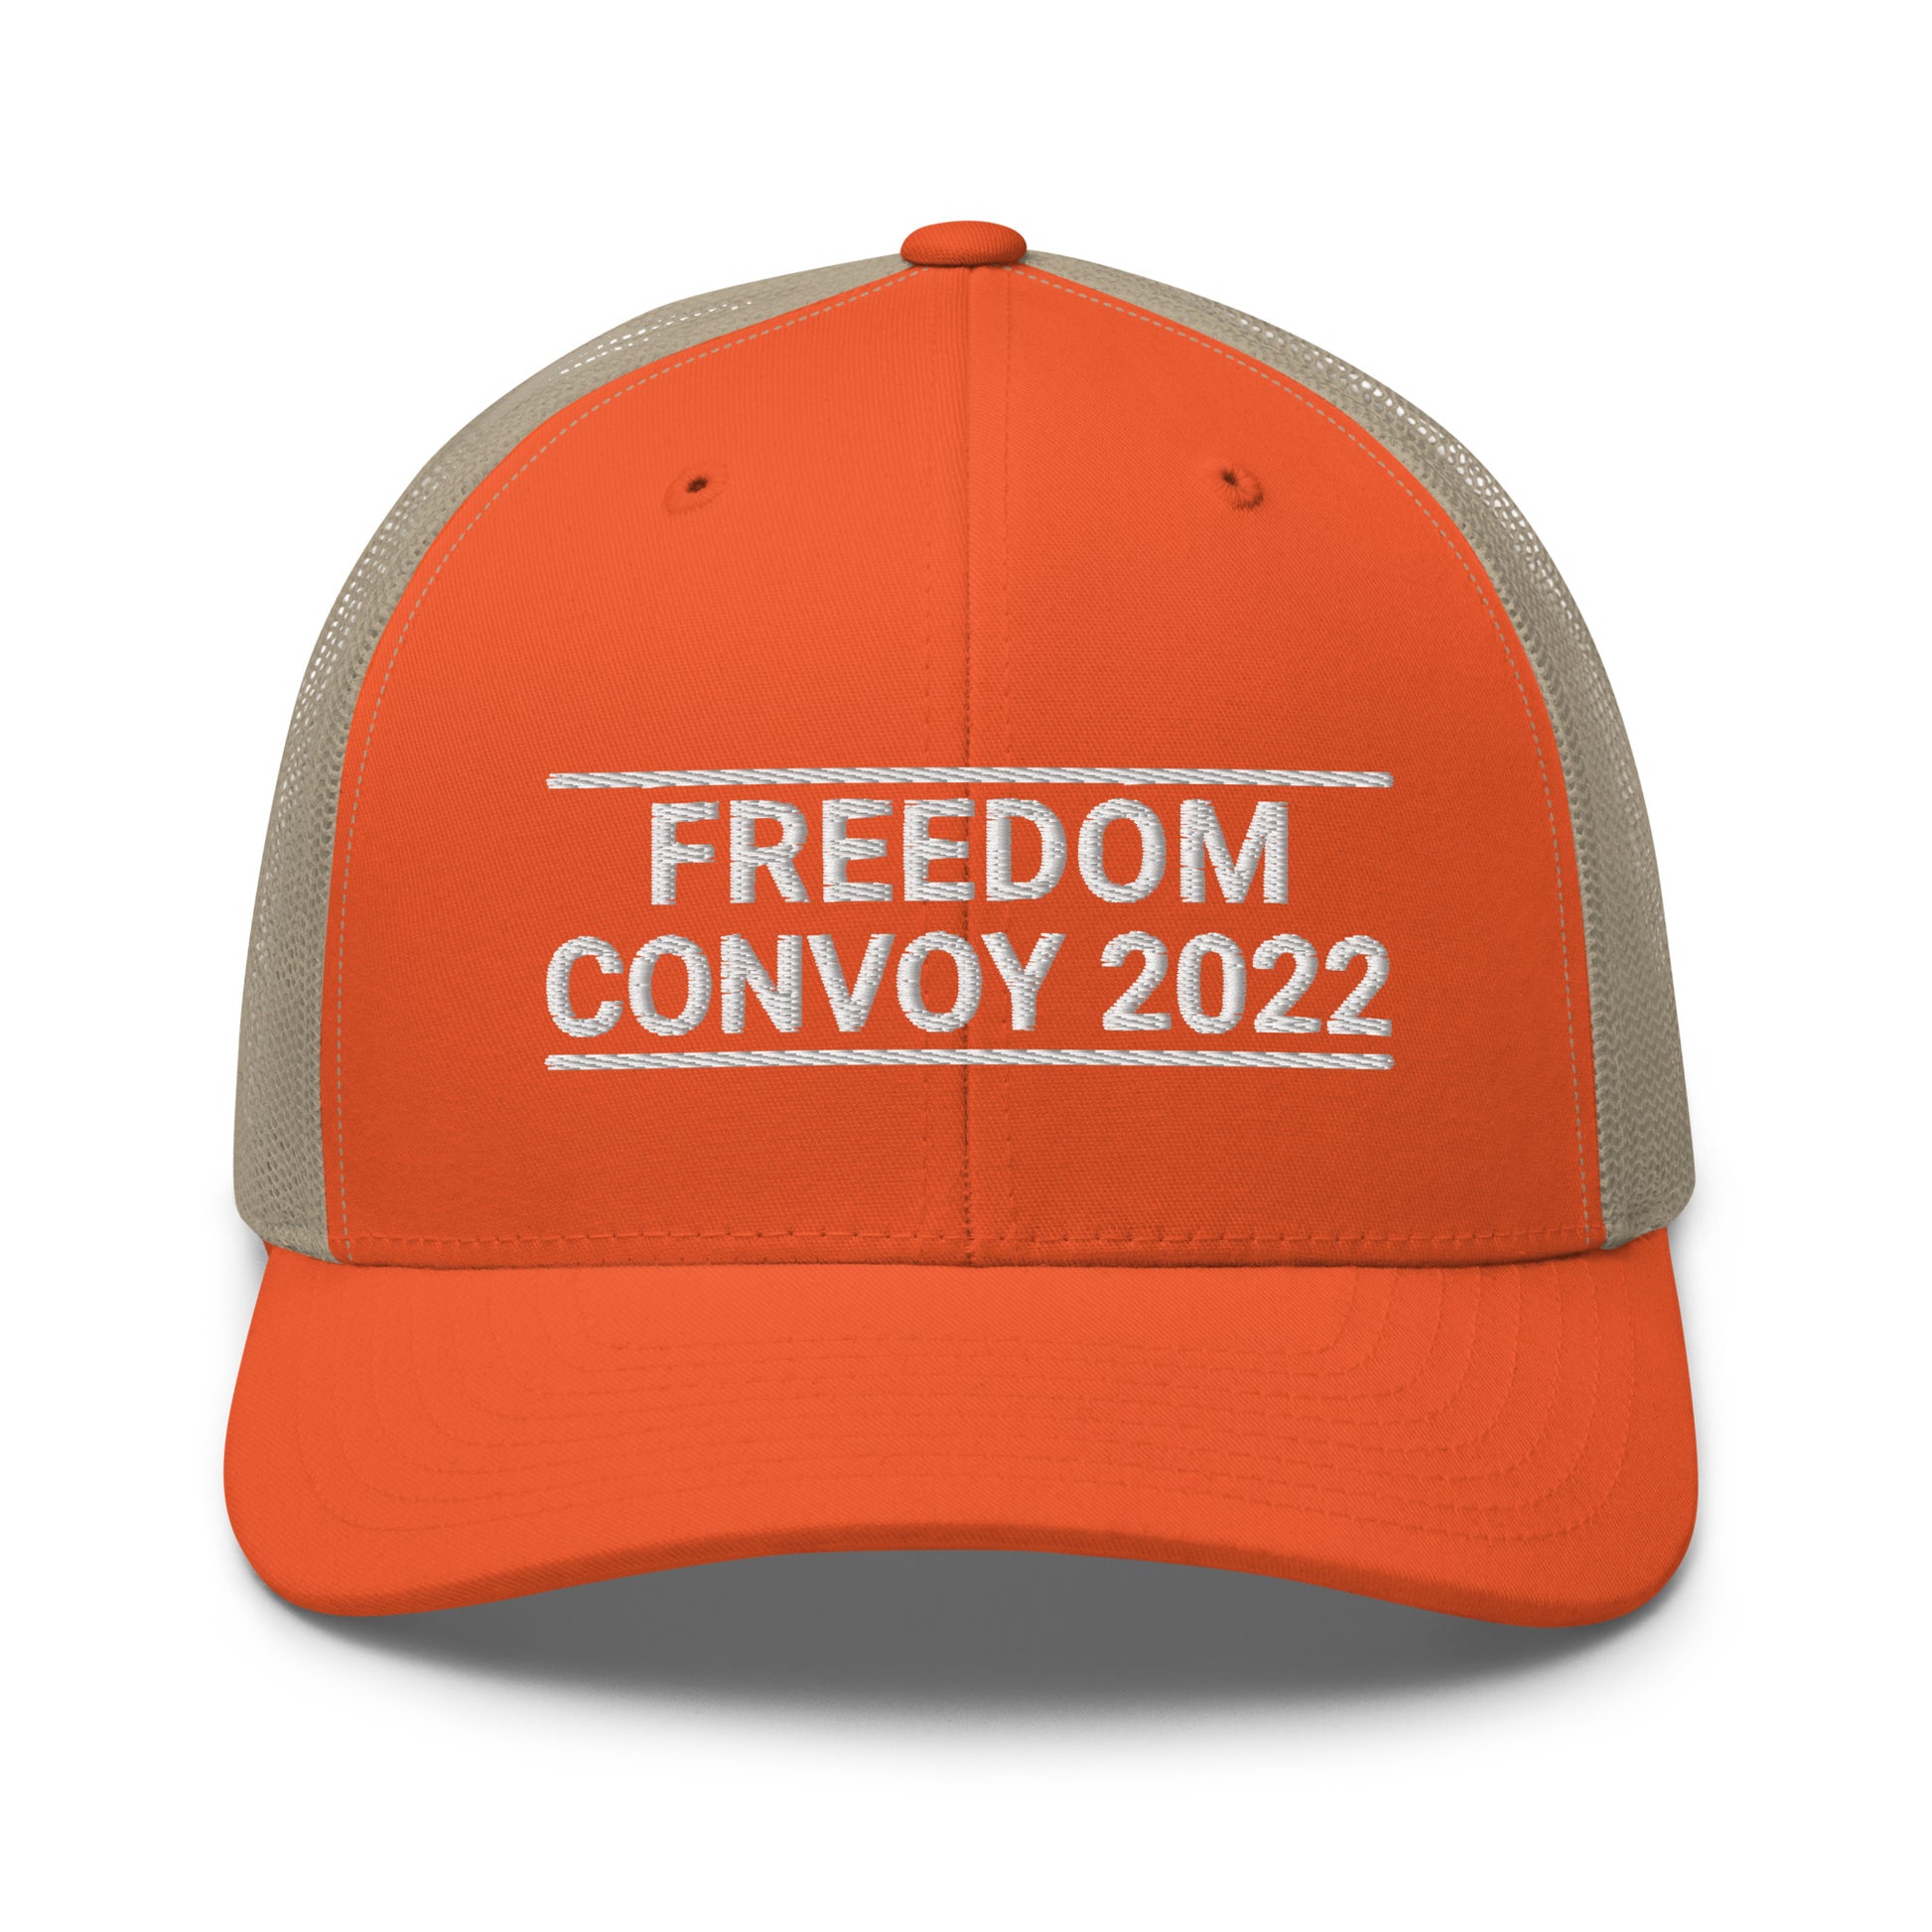 Freedom Convoy 2022 Yupoong 6606 orange and khaki hat.